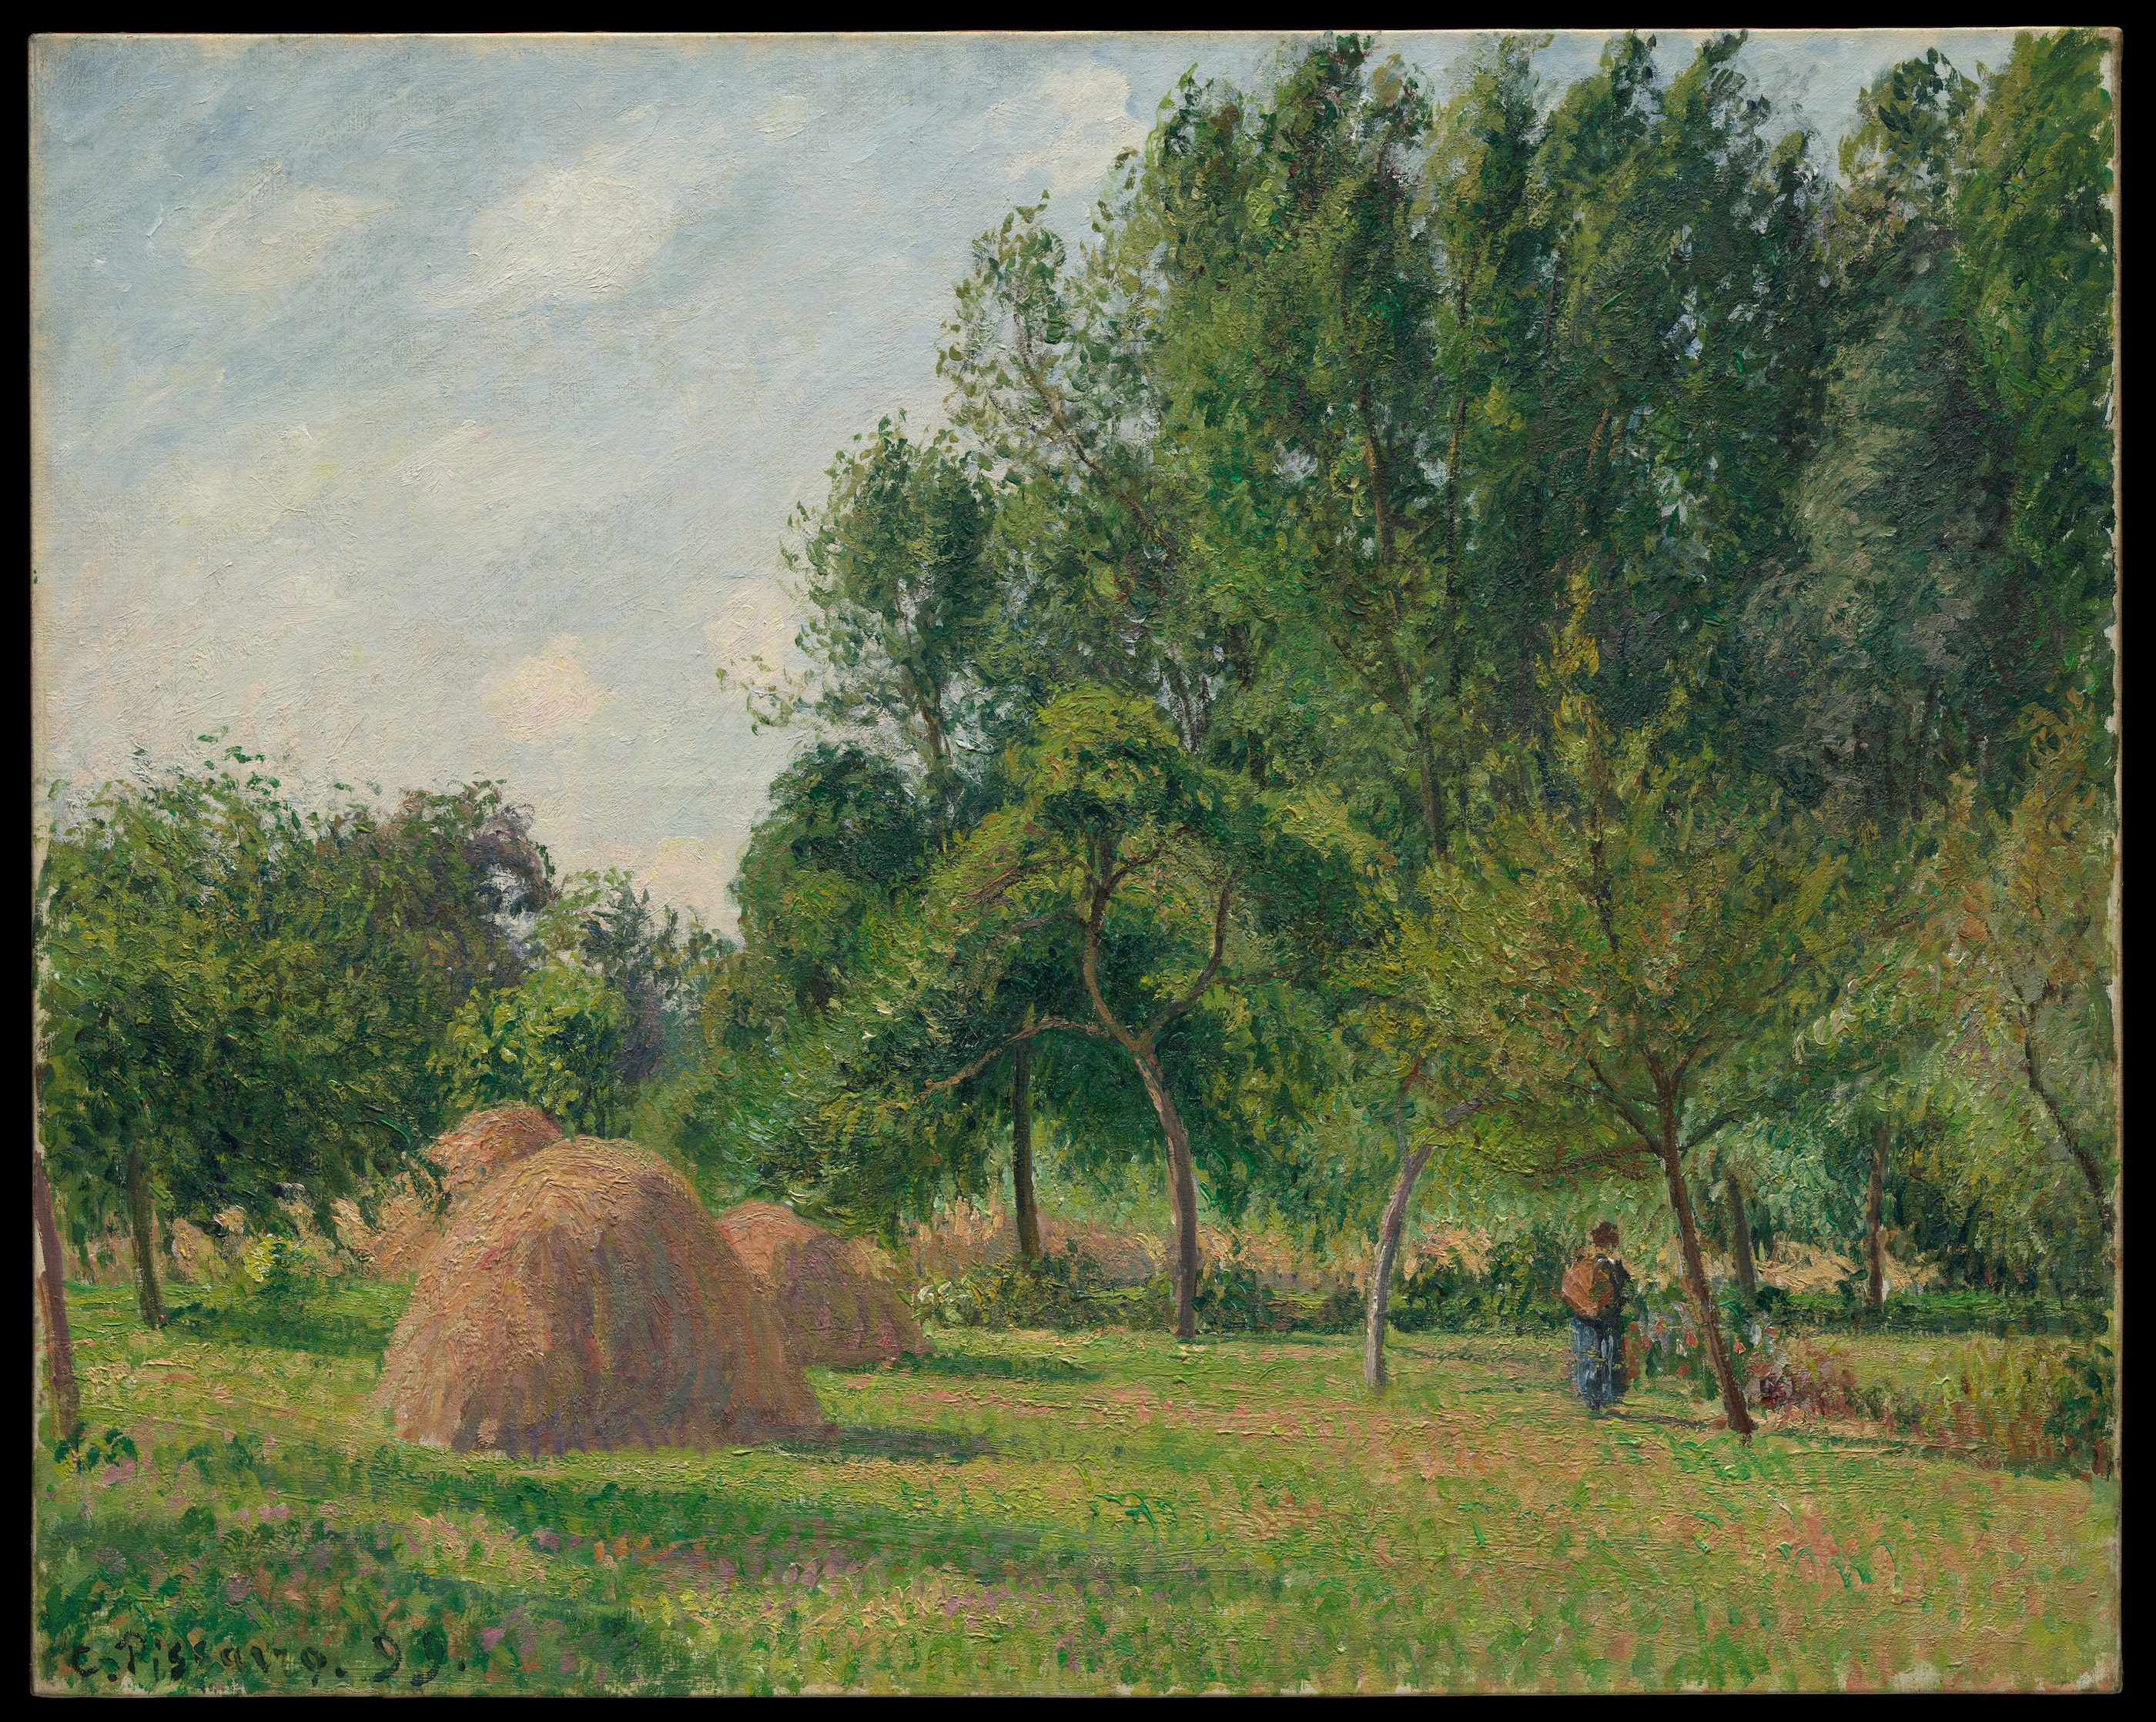 Höstackar på morgonen, Éragny by Camille Pissarro - 1899 - 63,5 x 80 cm 